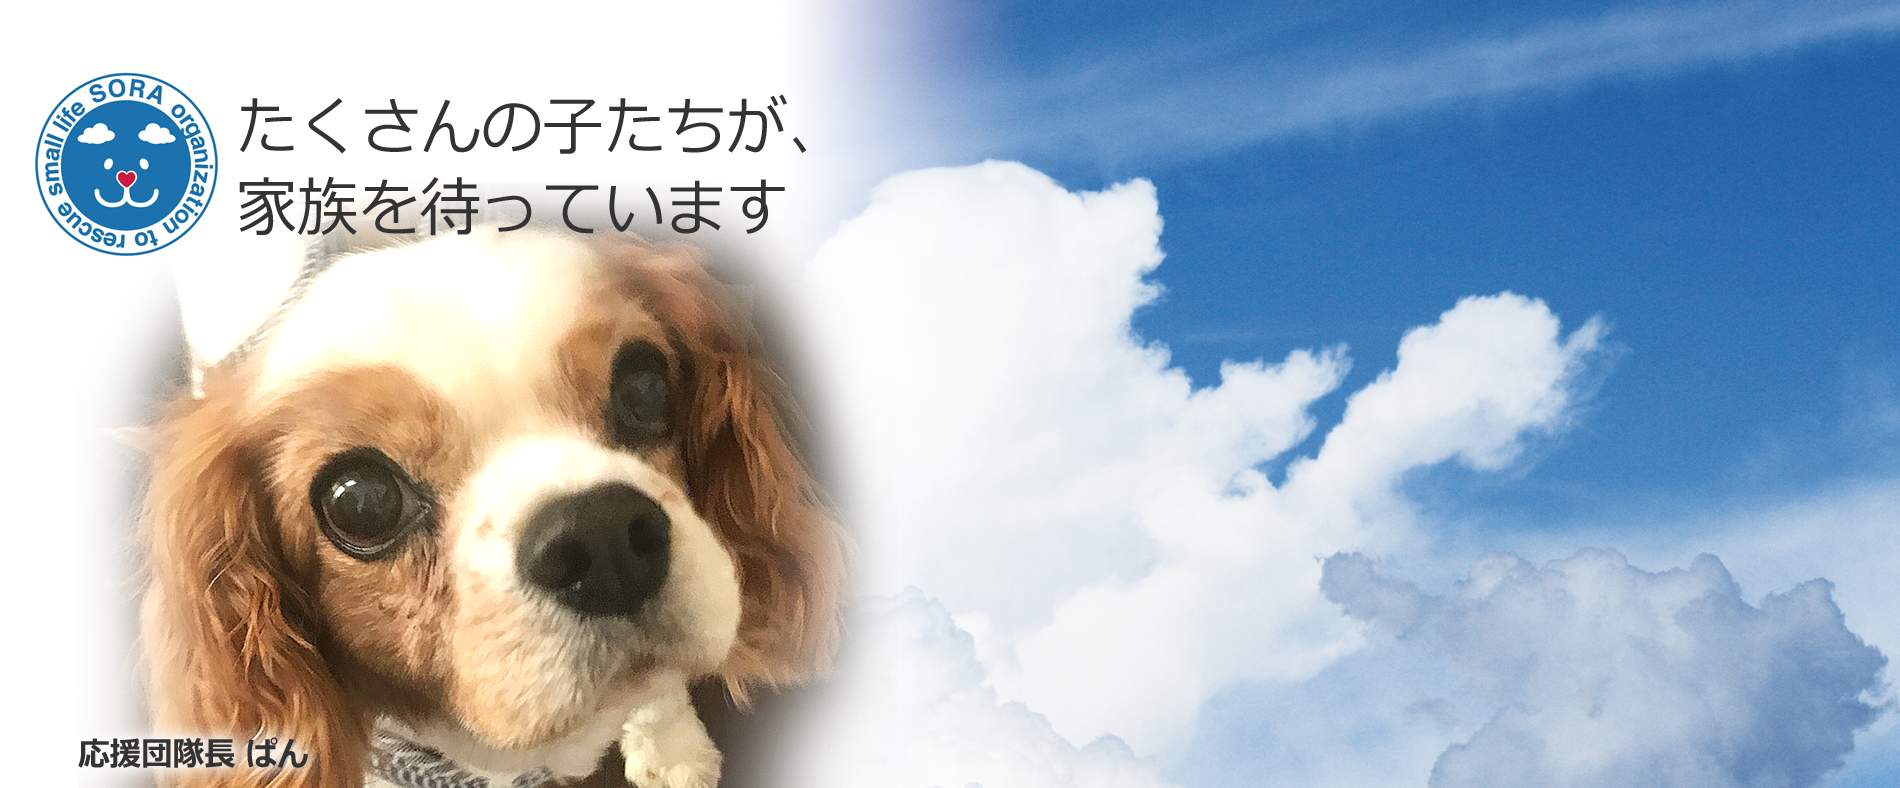 動物愛護団体 一般社団法人sora小さな命を救う会 愛知県名古屋市